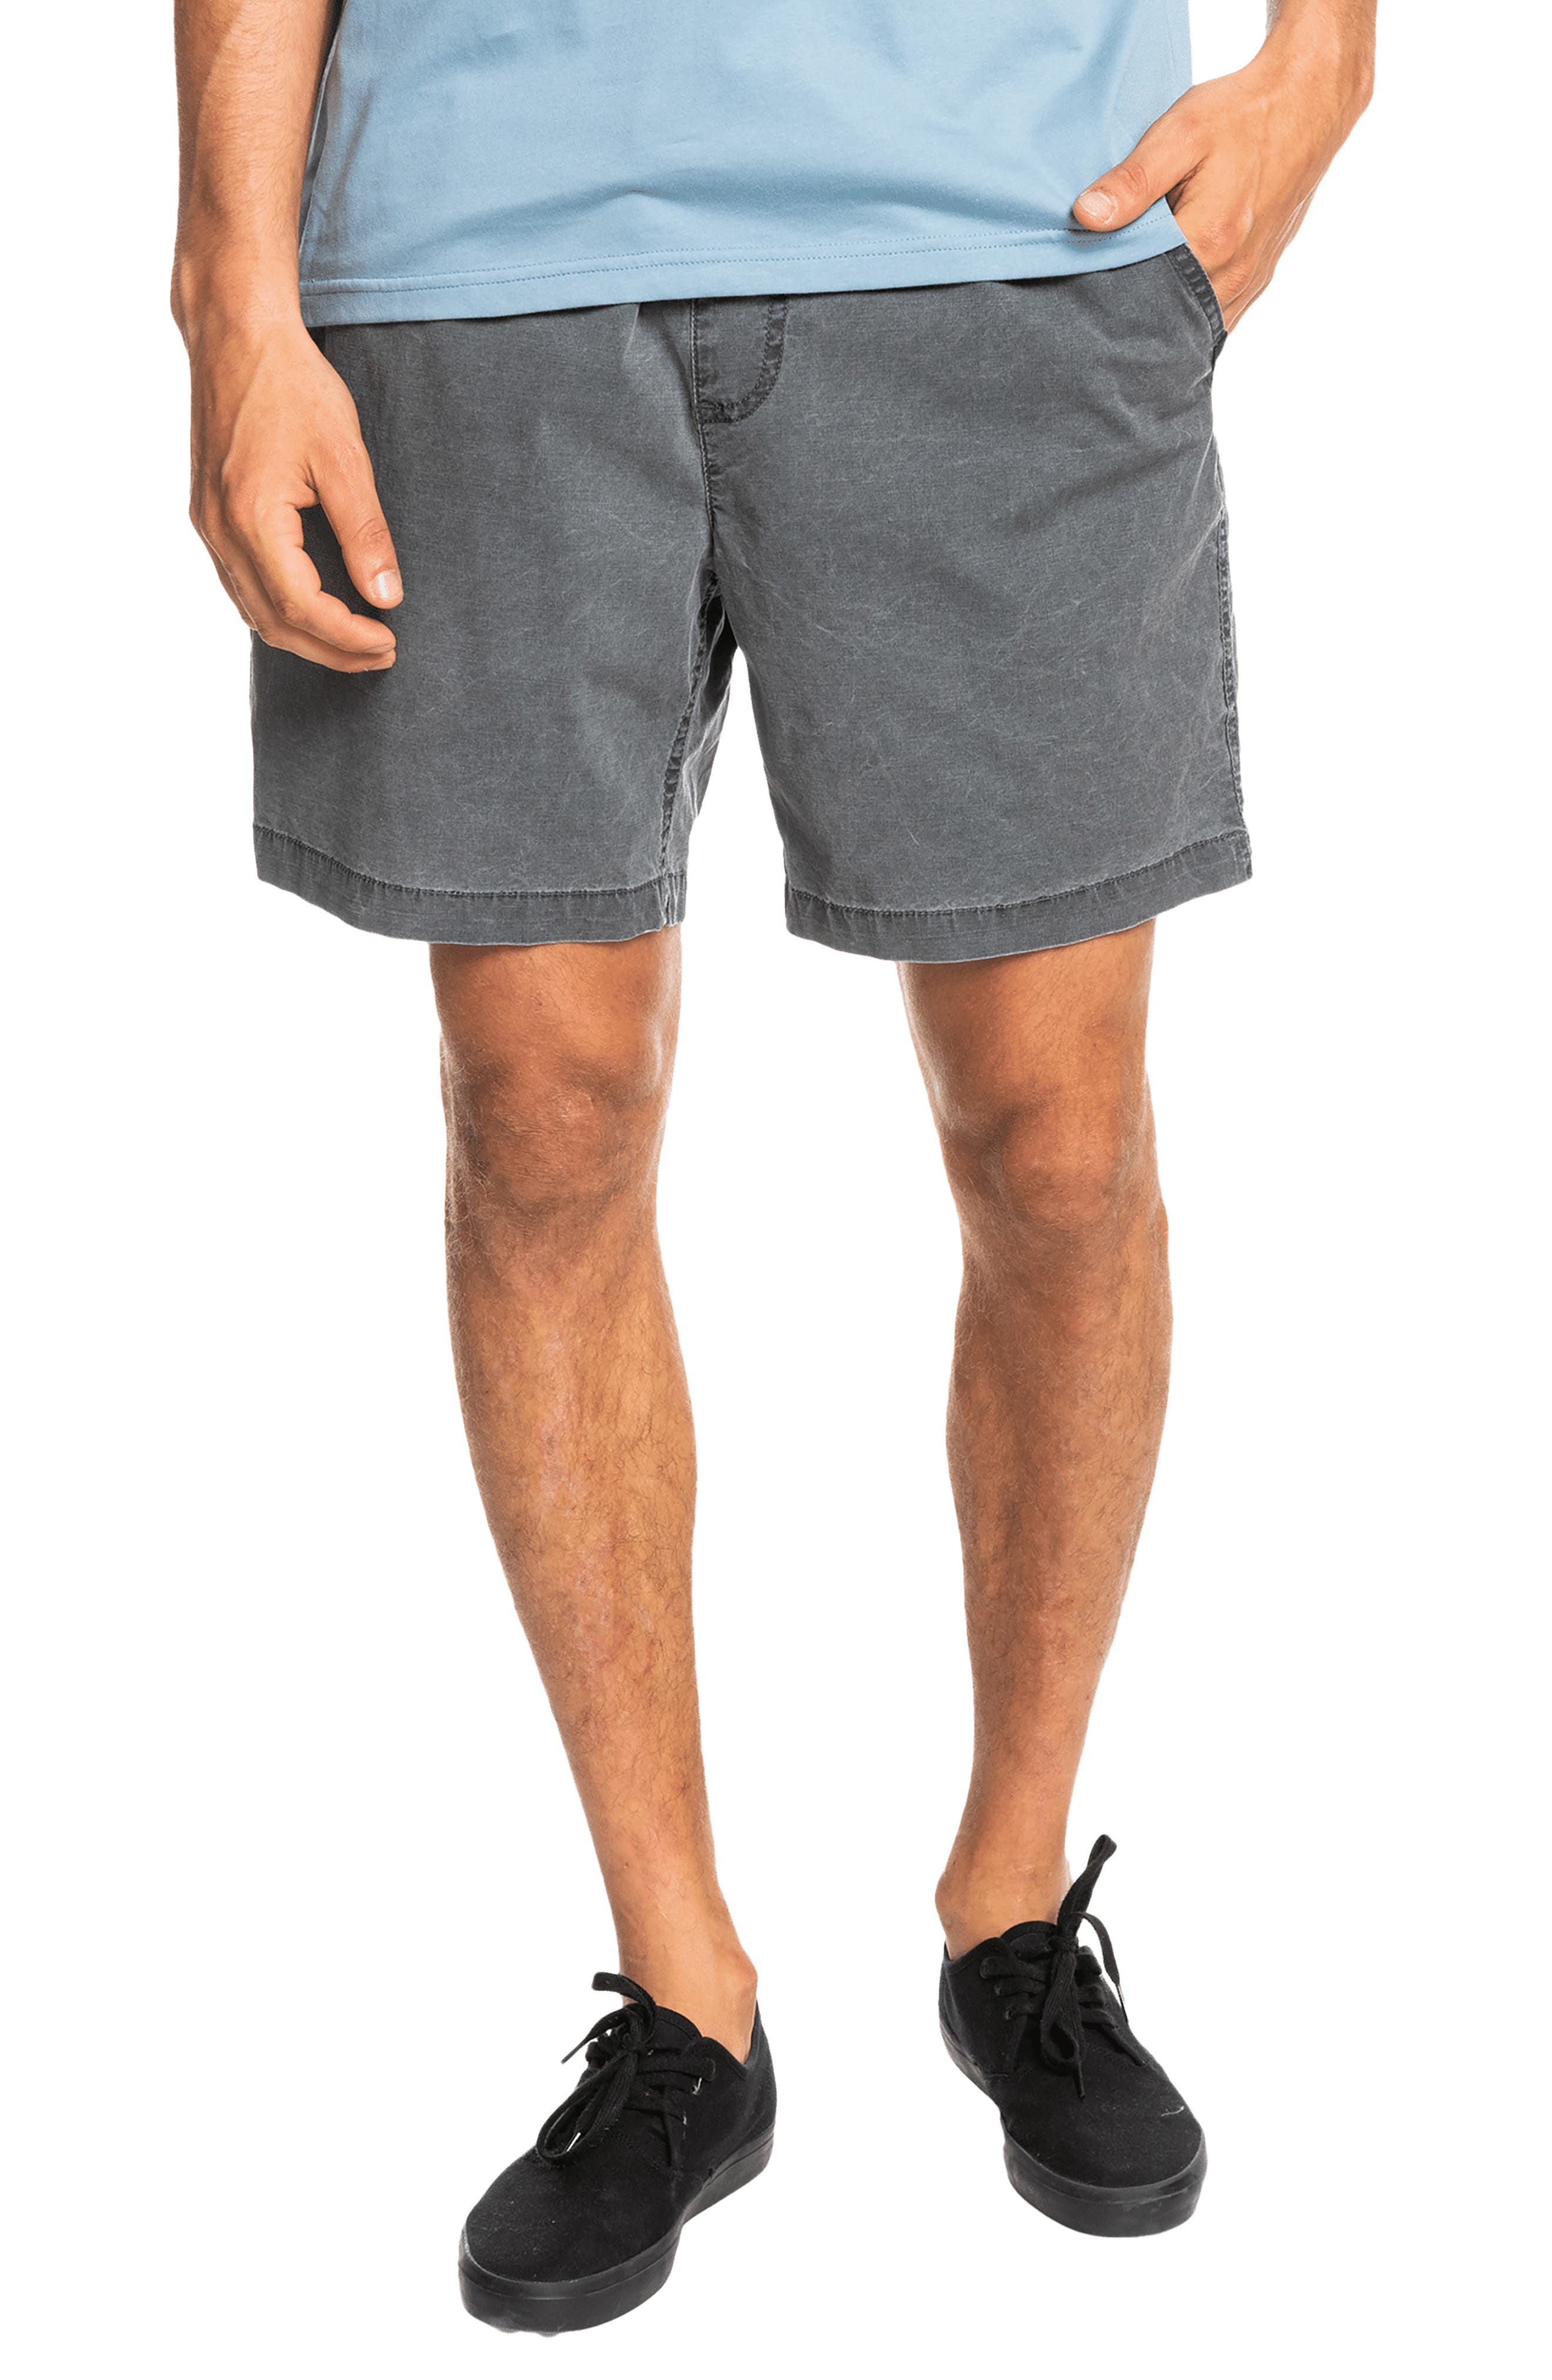 N/V shorts short cotton plain jogger sweatpants